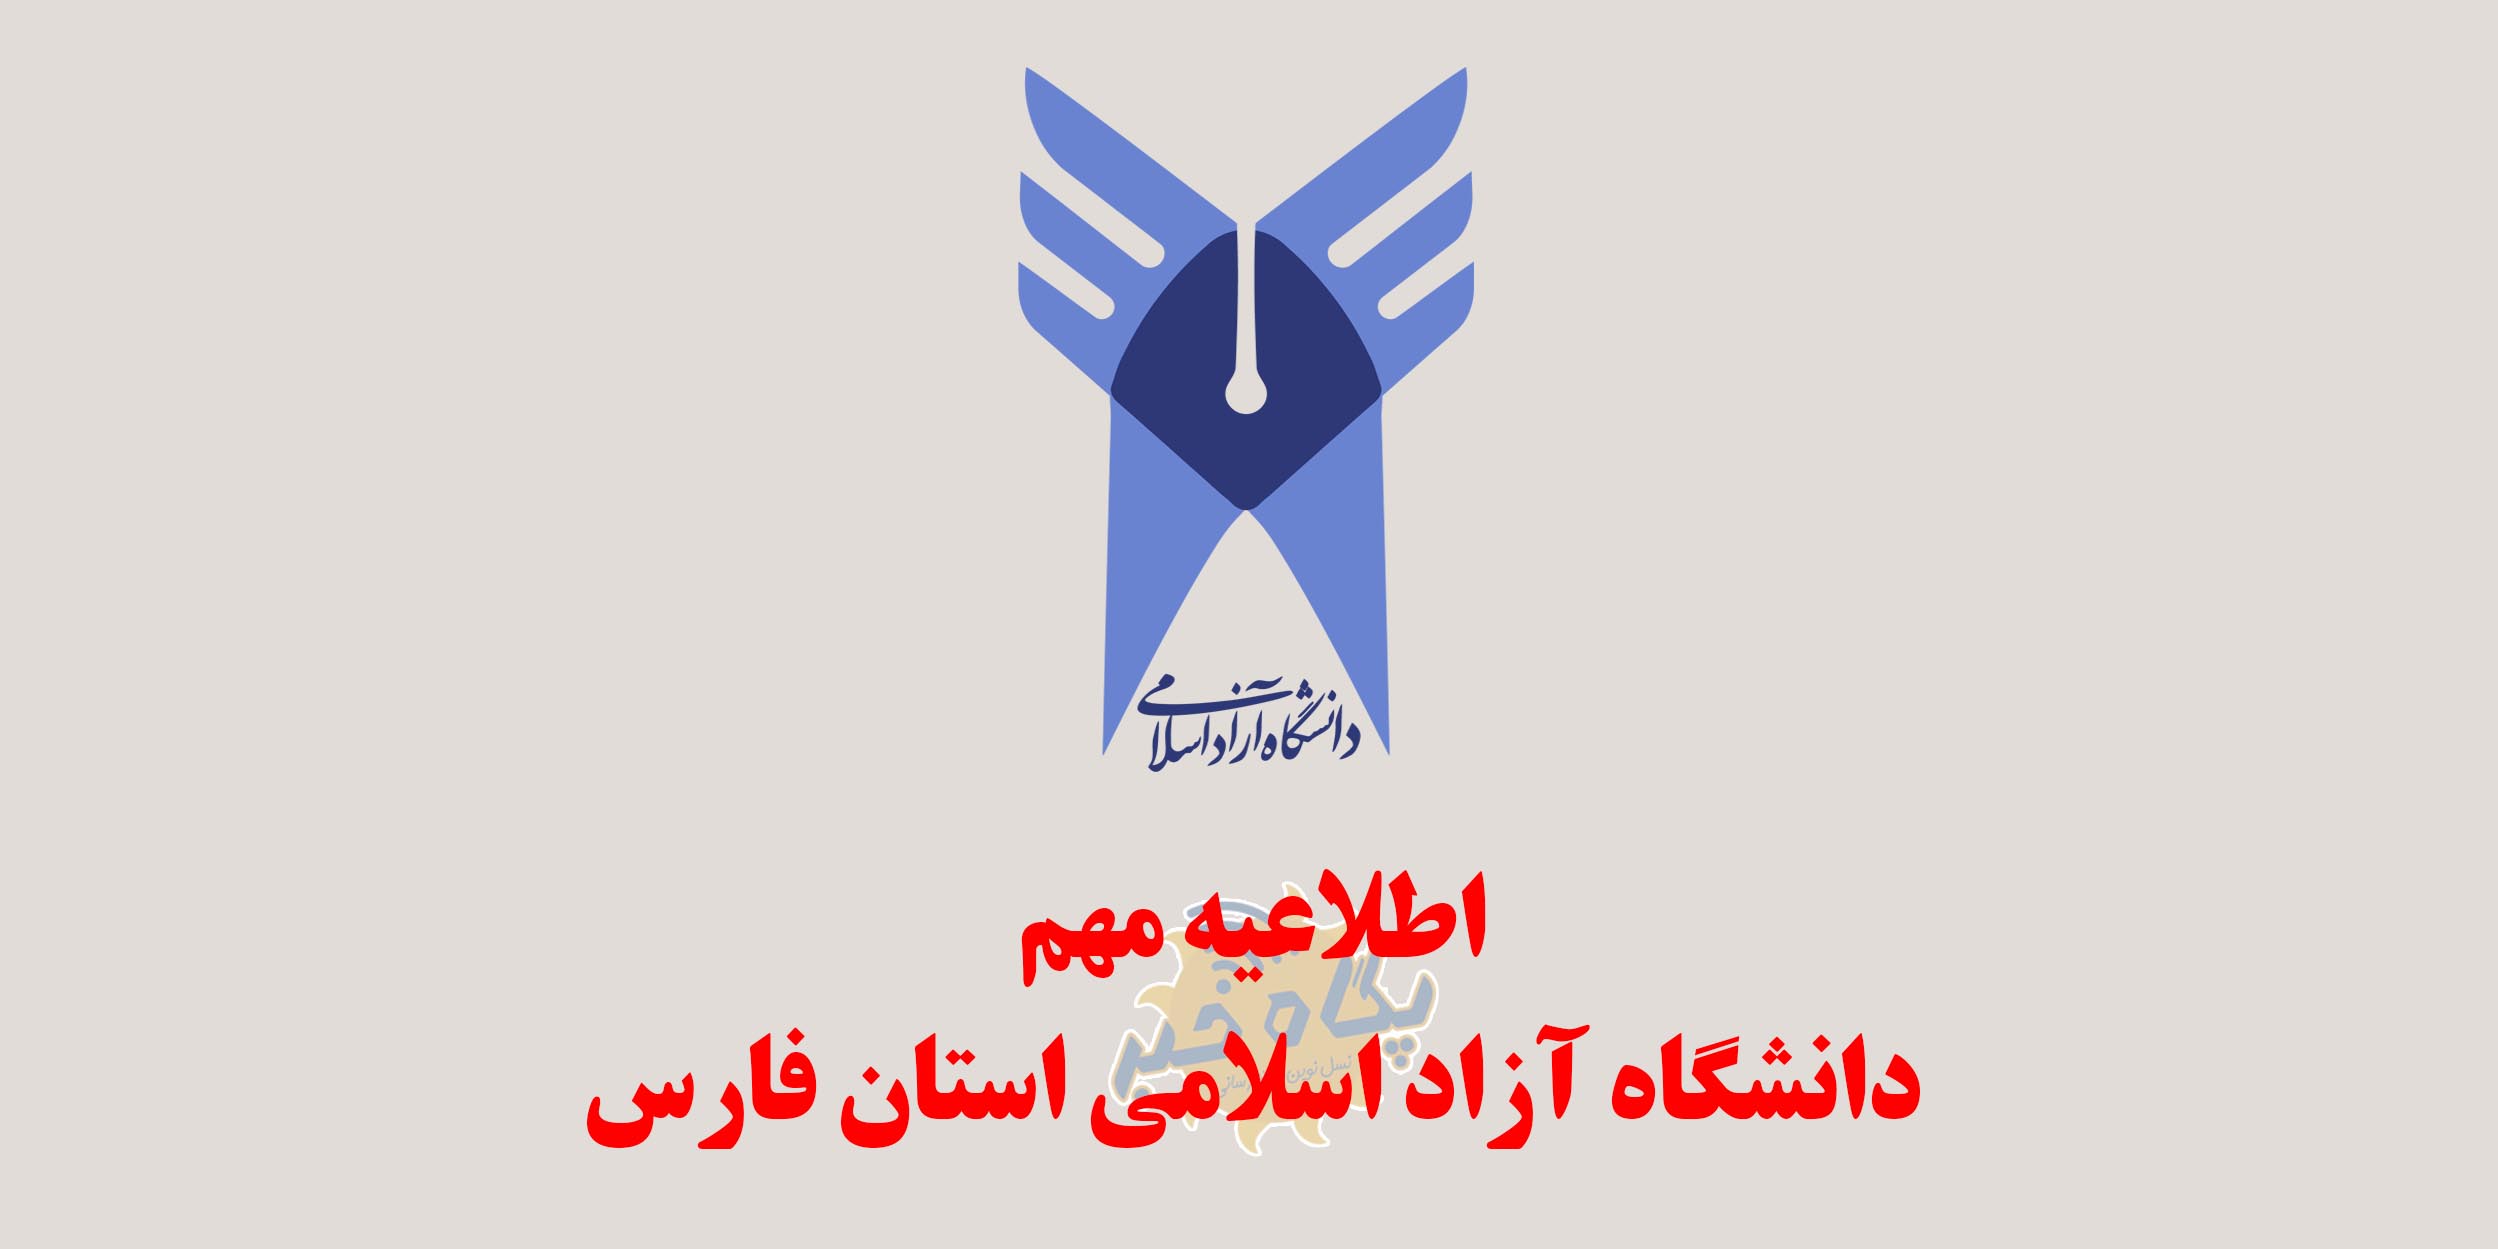 لغو آزمون های دانشگاه آزاد اسلامی استان فارس در روز سه شنبه ۱۷ دی ماه